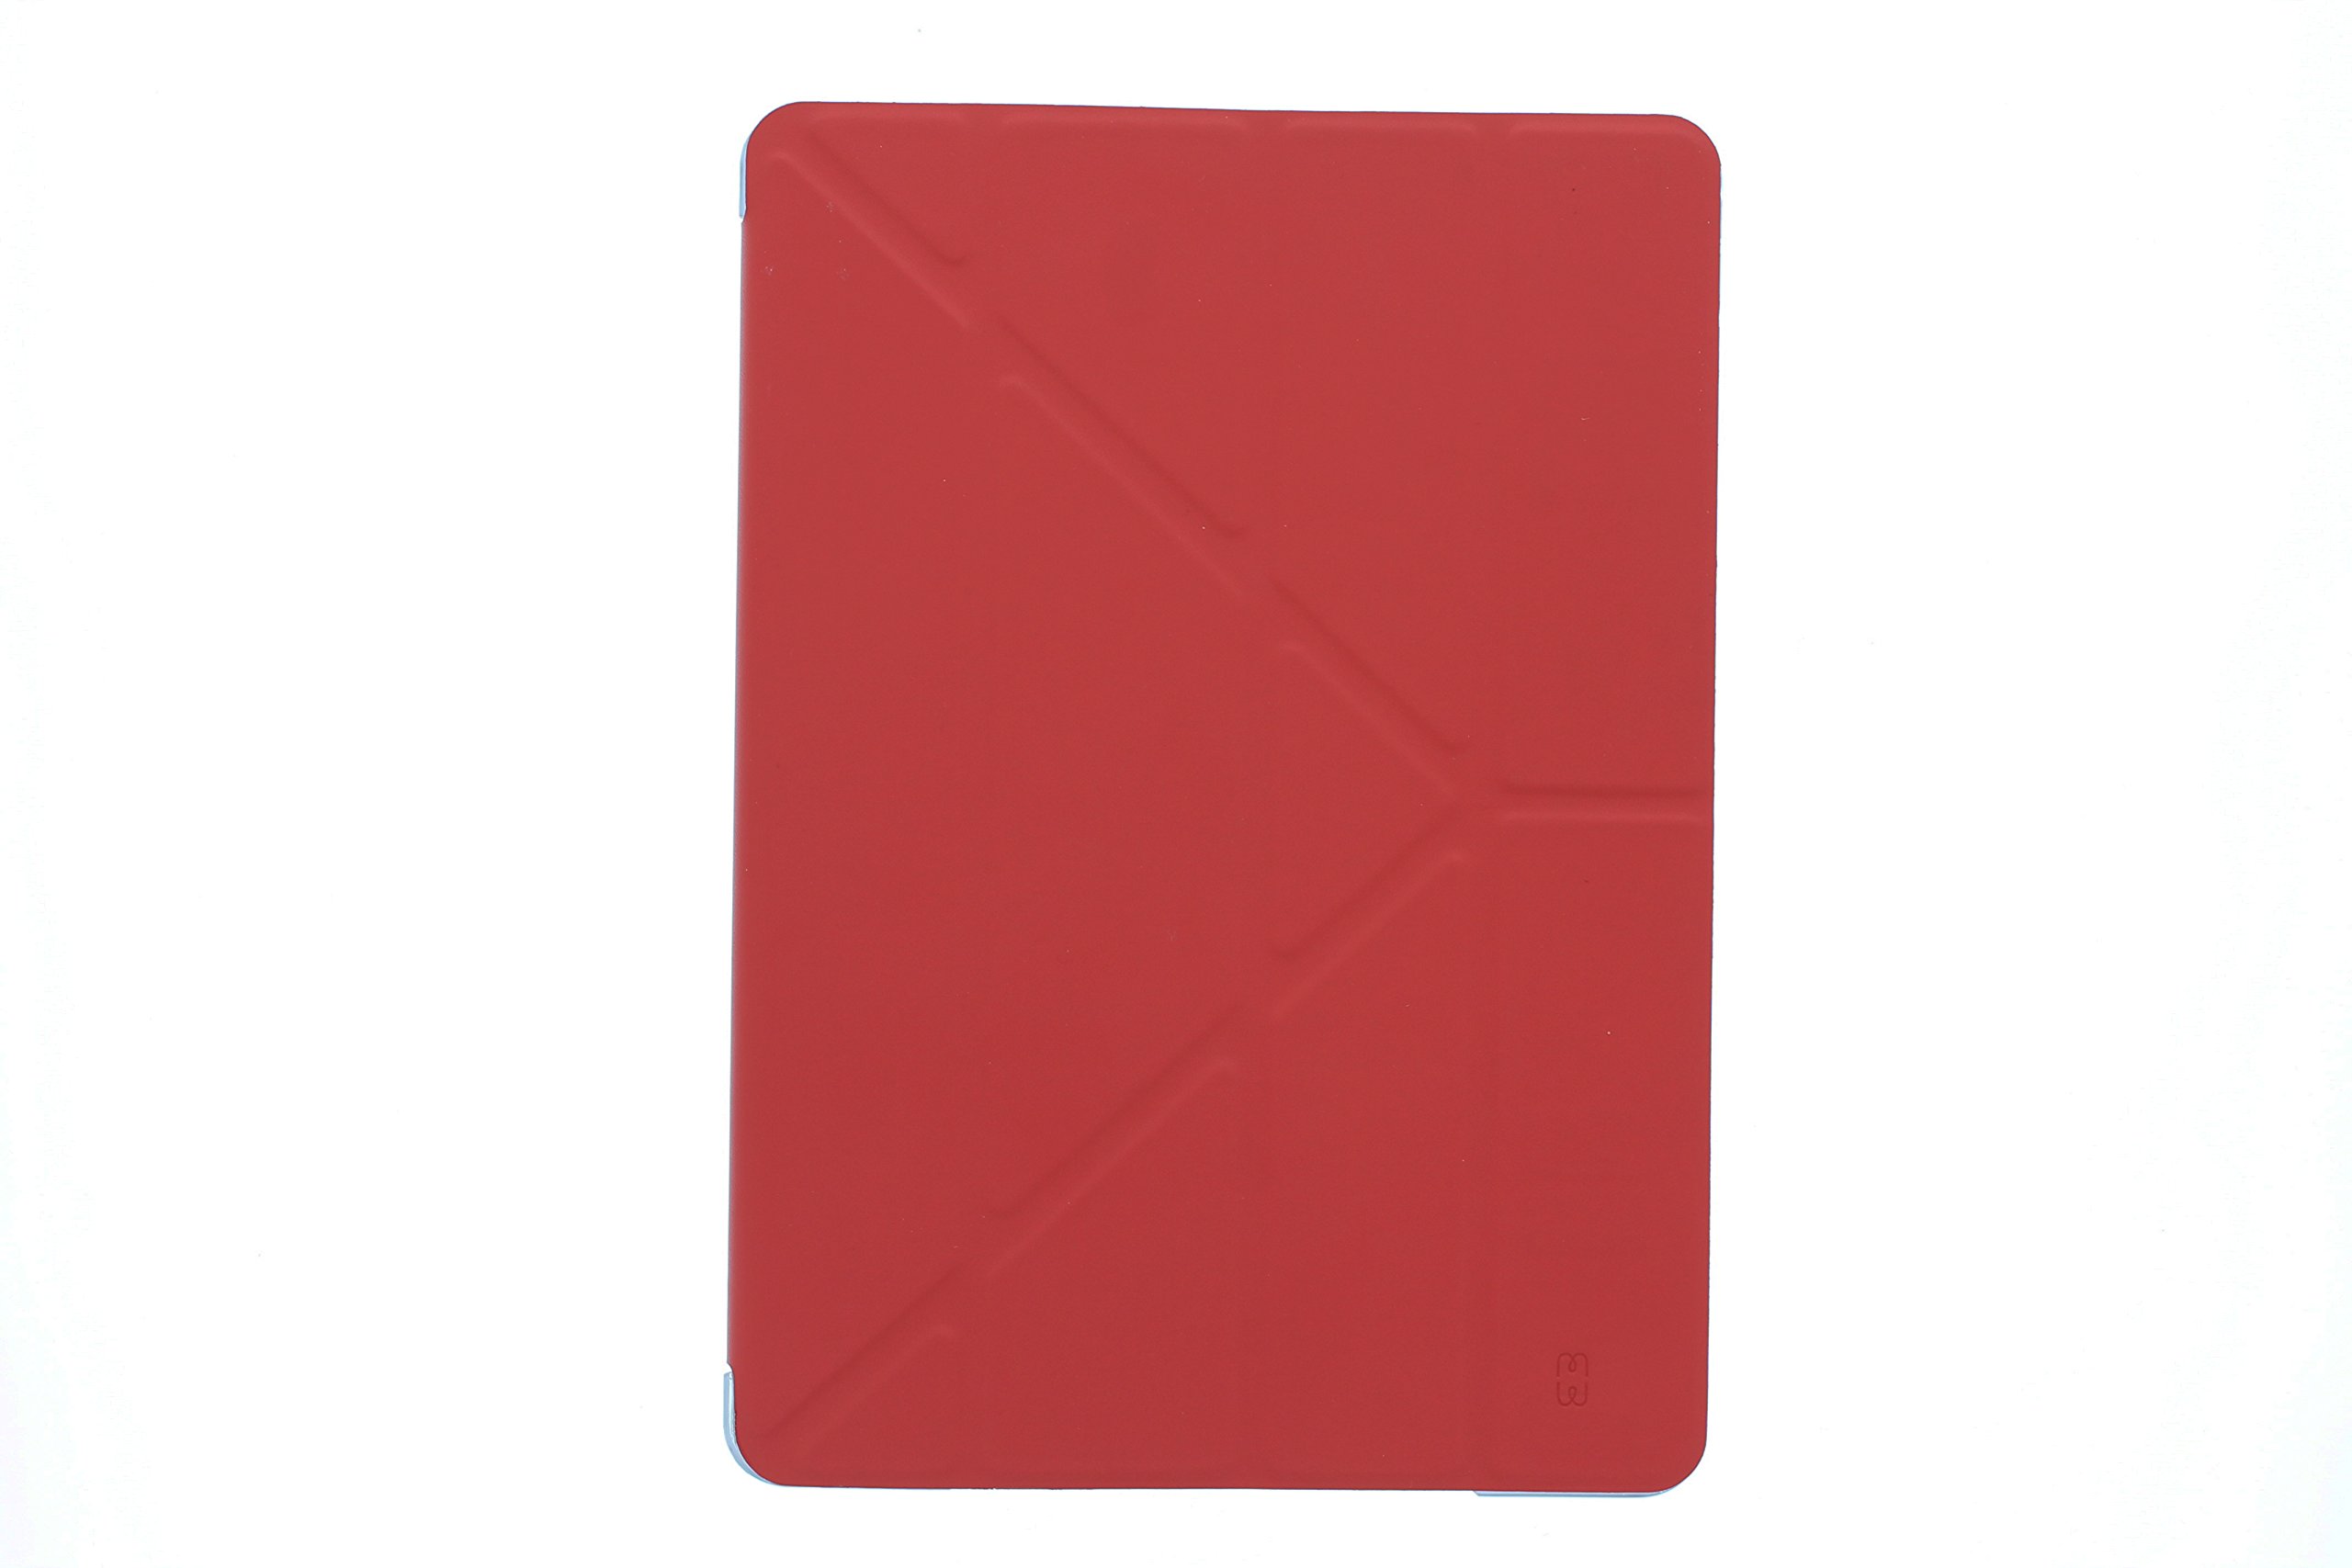 MW 300007 Schutzhülle für iPad rot rot iPad Pro 12.9"